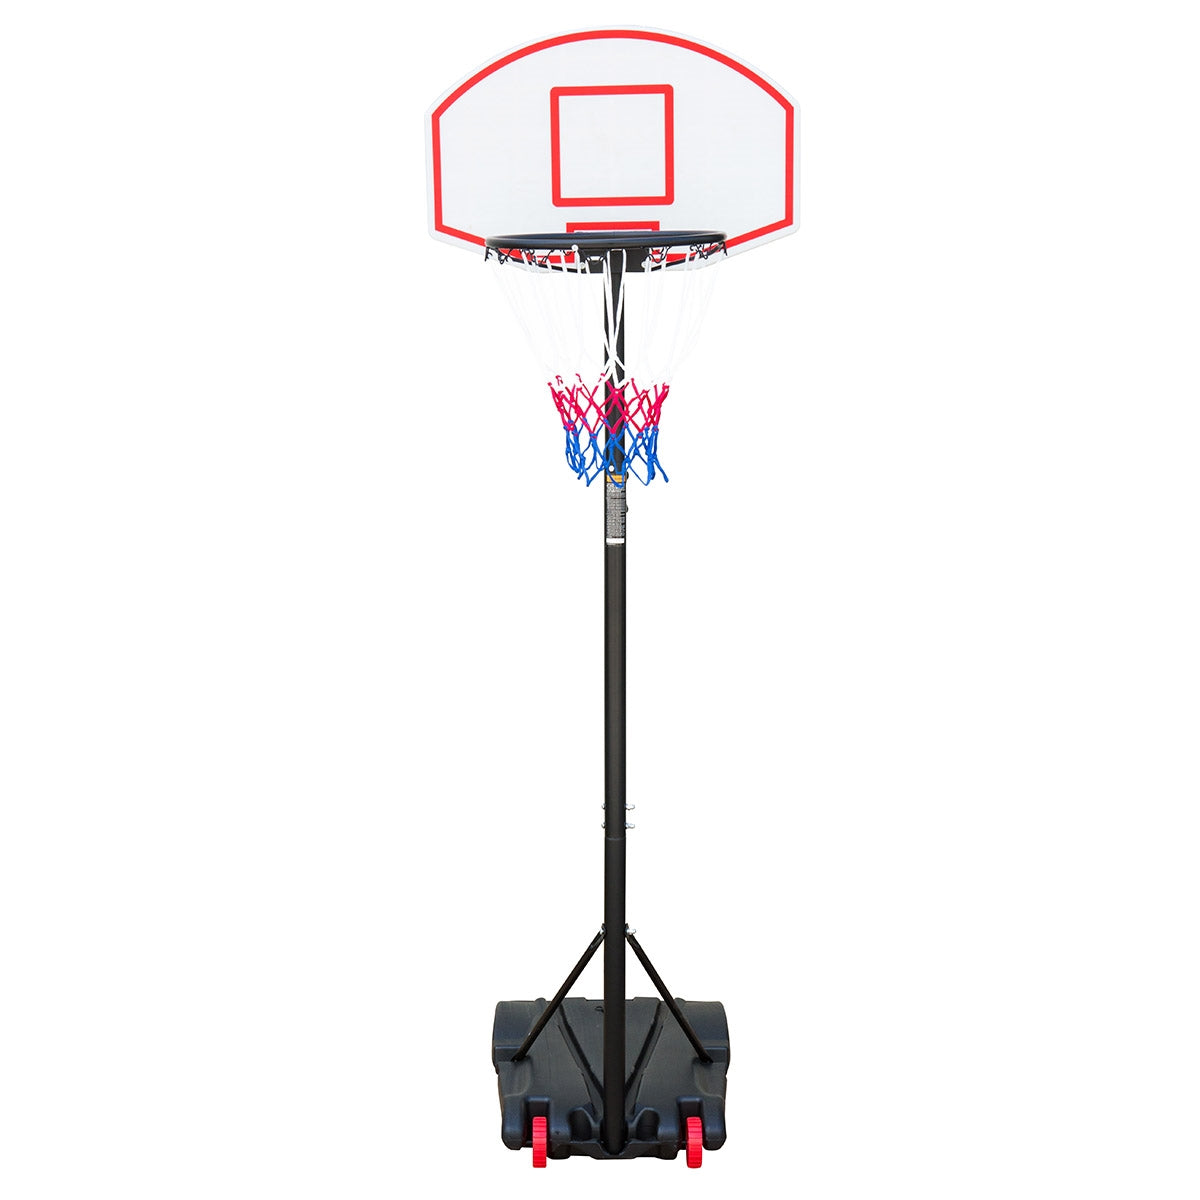 Billede af Basketballkurv stander m. hjul til haven - Hvid/Rød